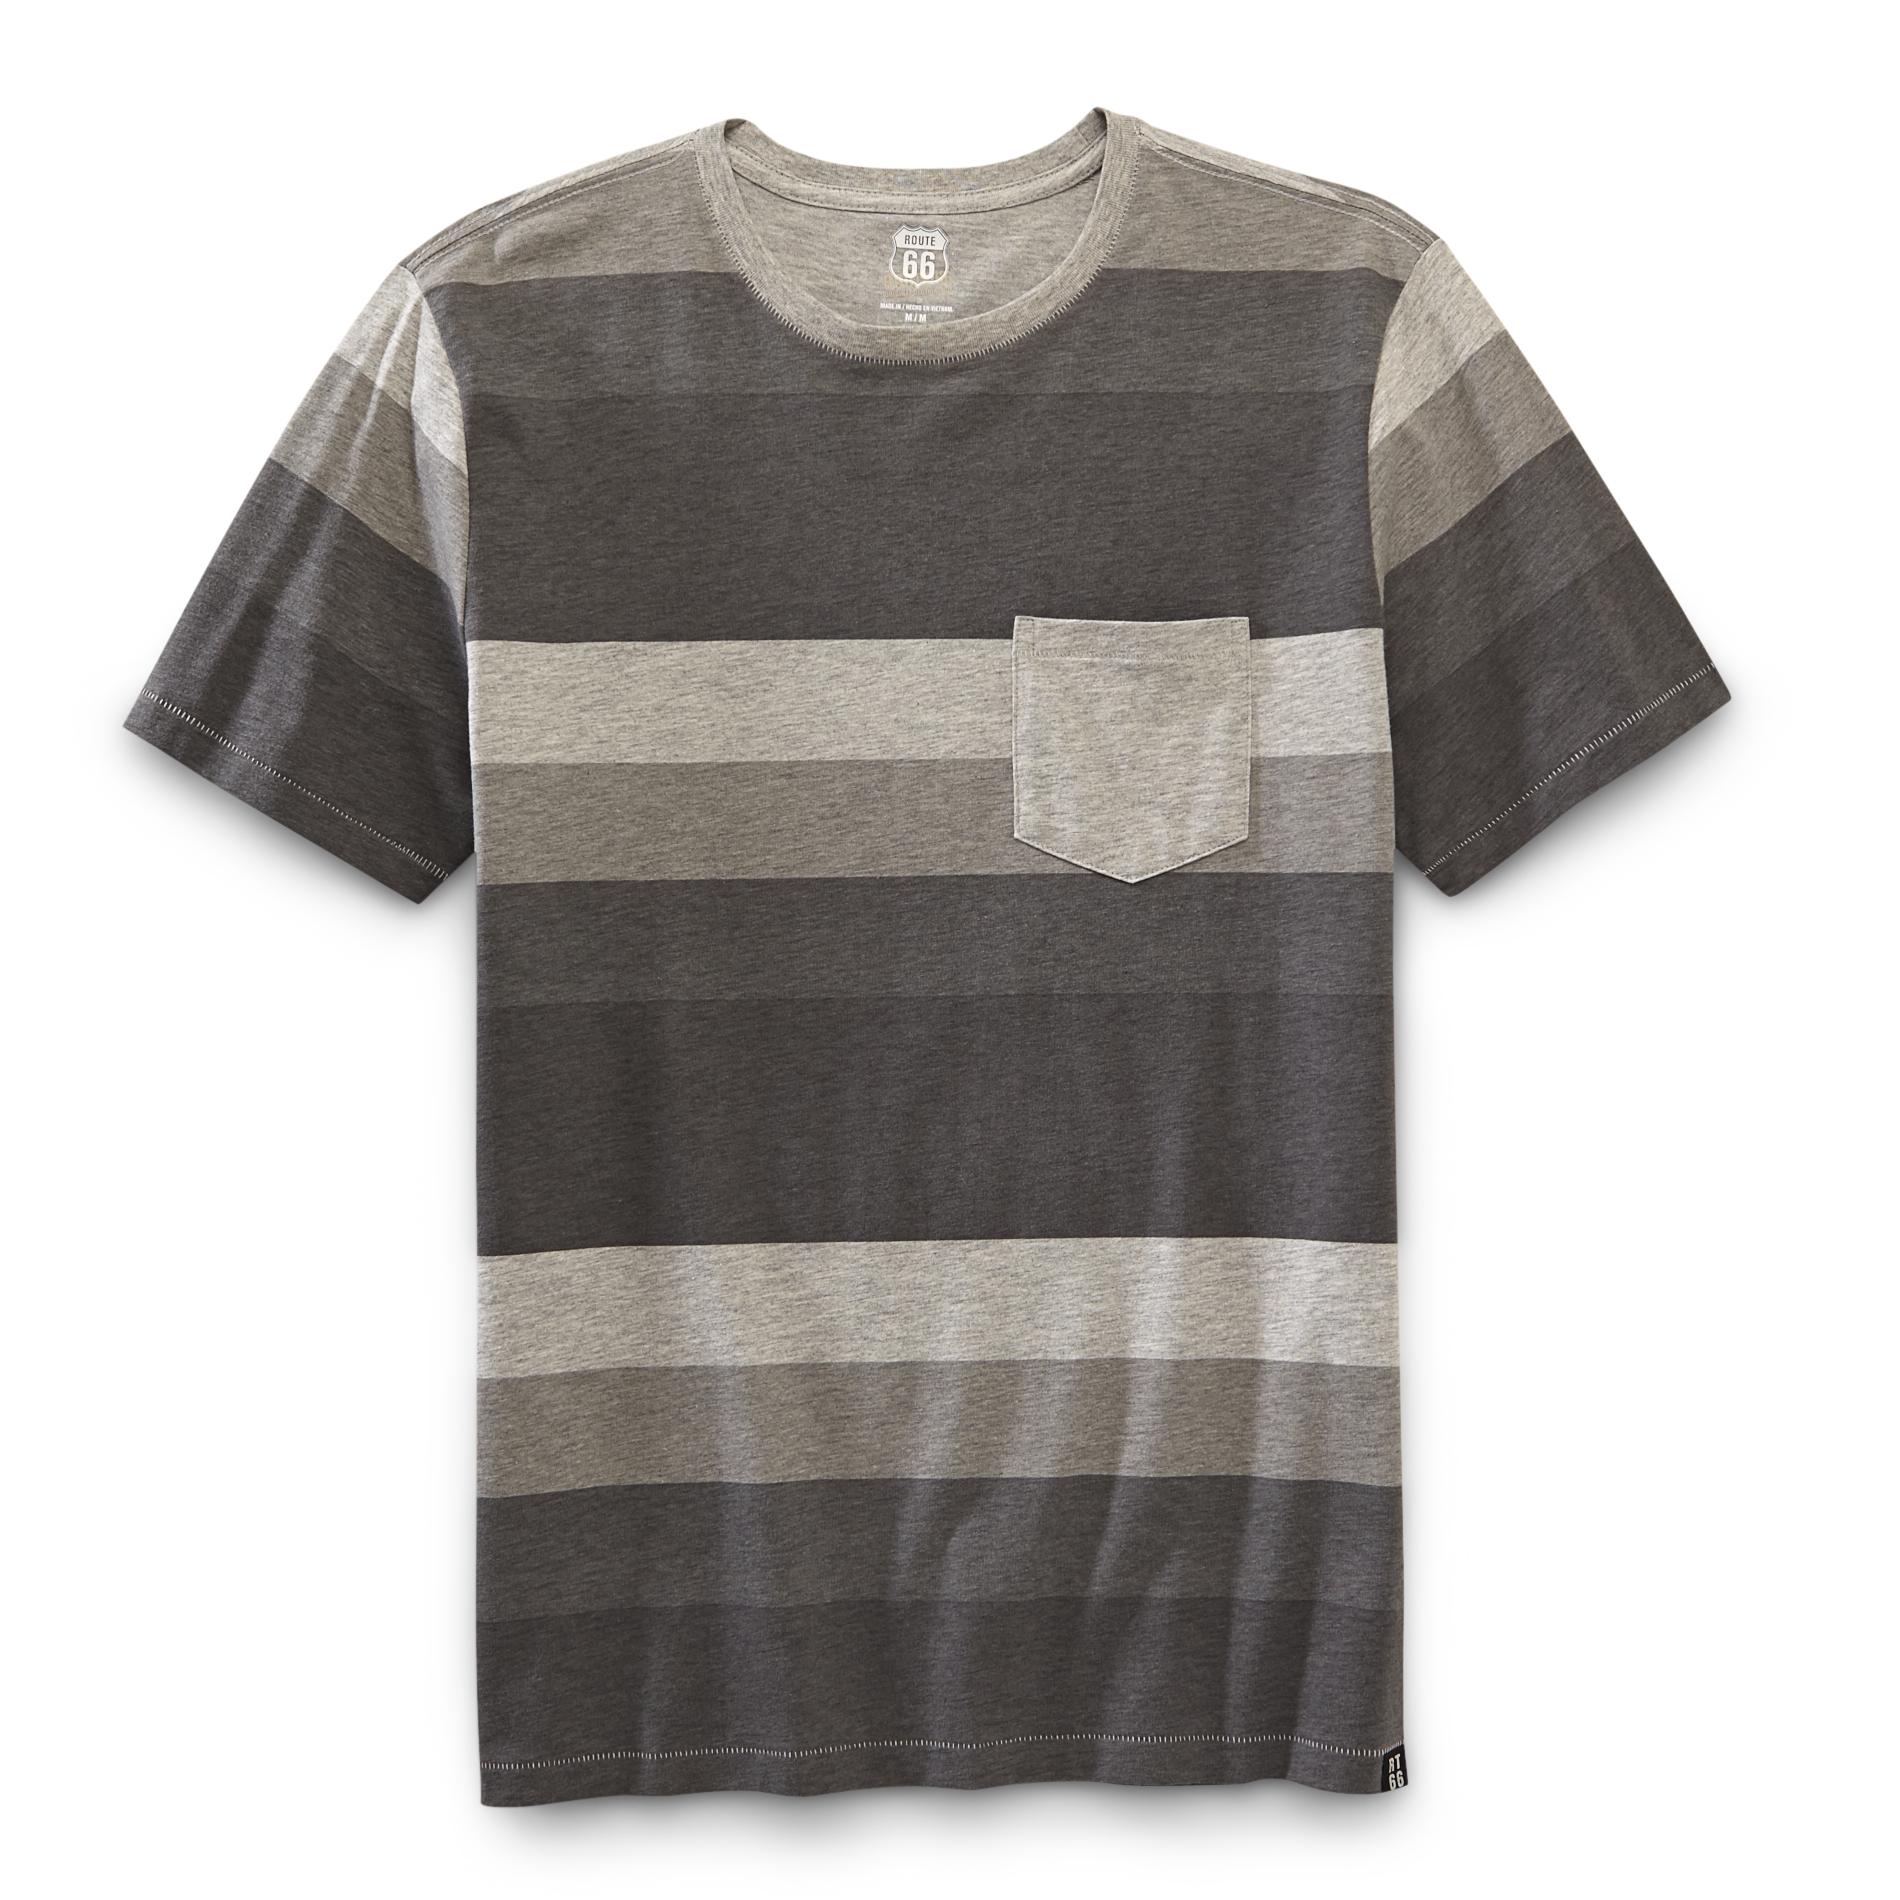 Route 66 Men's Pocket T-Shirt - Striped